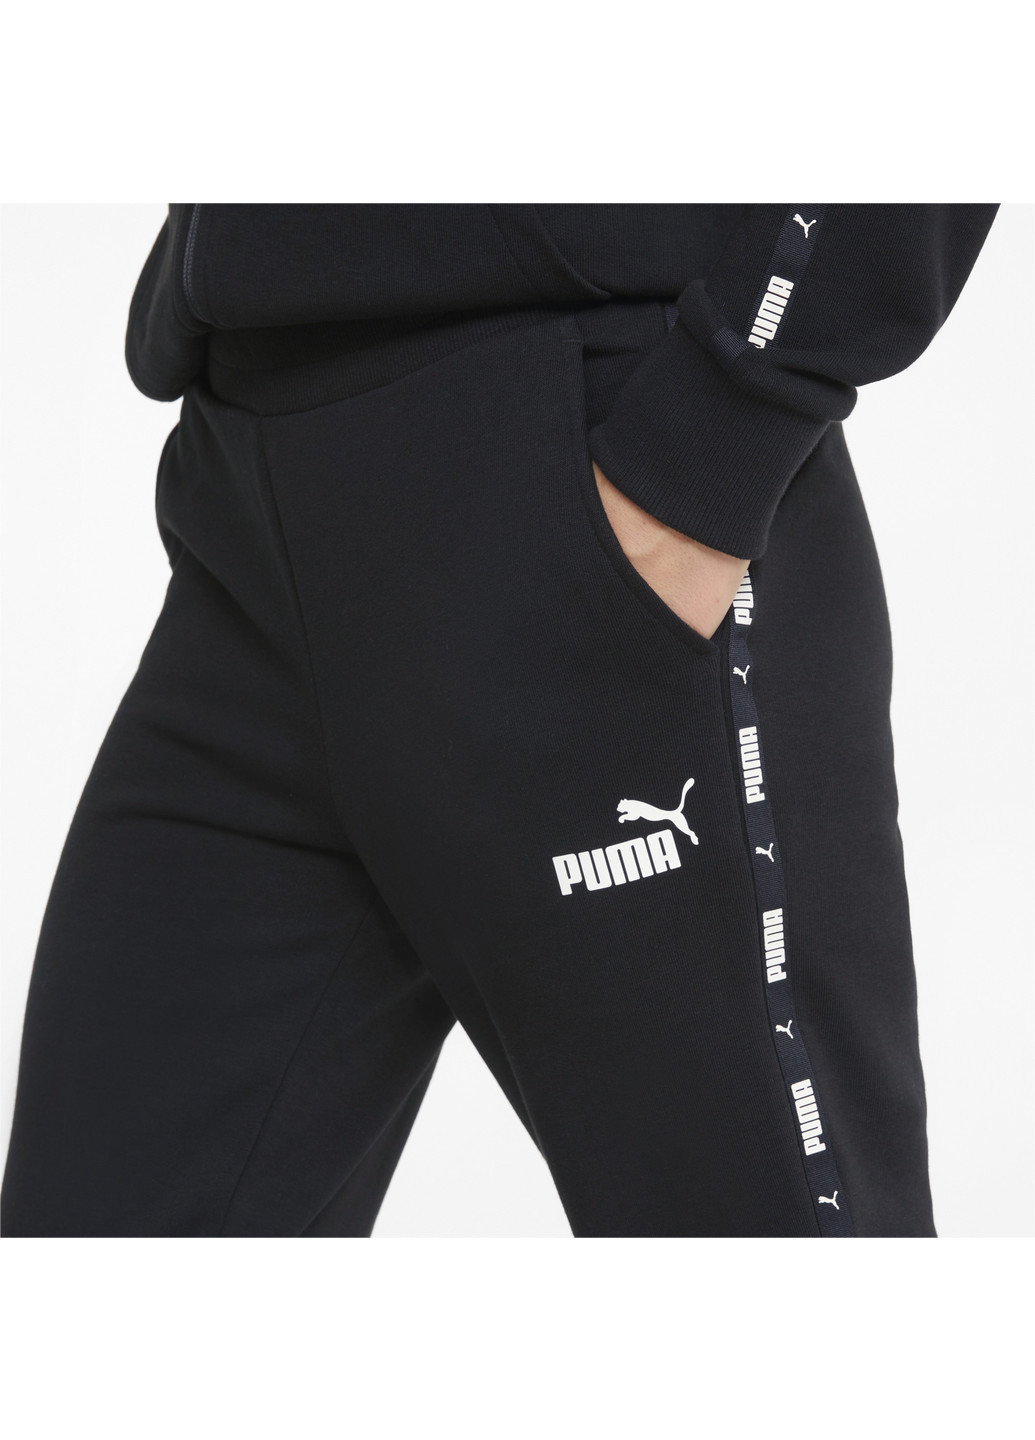 Штани Power Tape Women’s Pants Puma однотонні чорні спортивні бавовна, поліестер, еластан